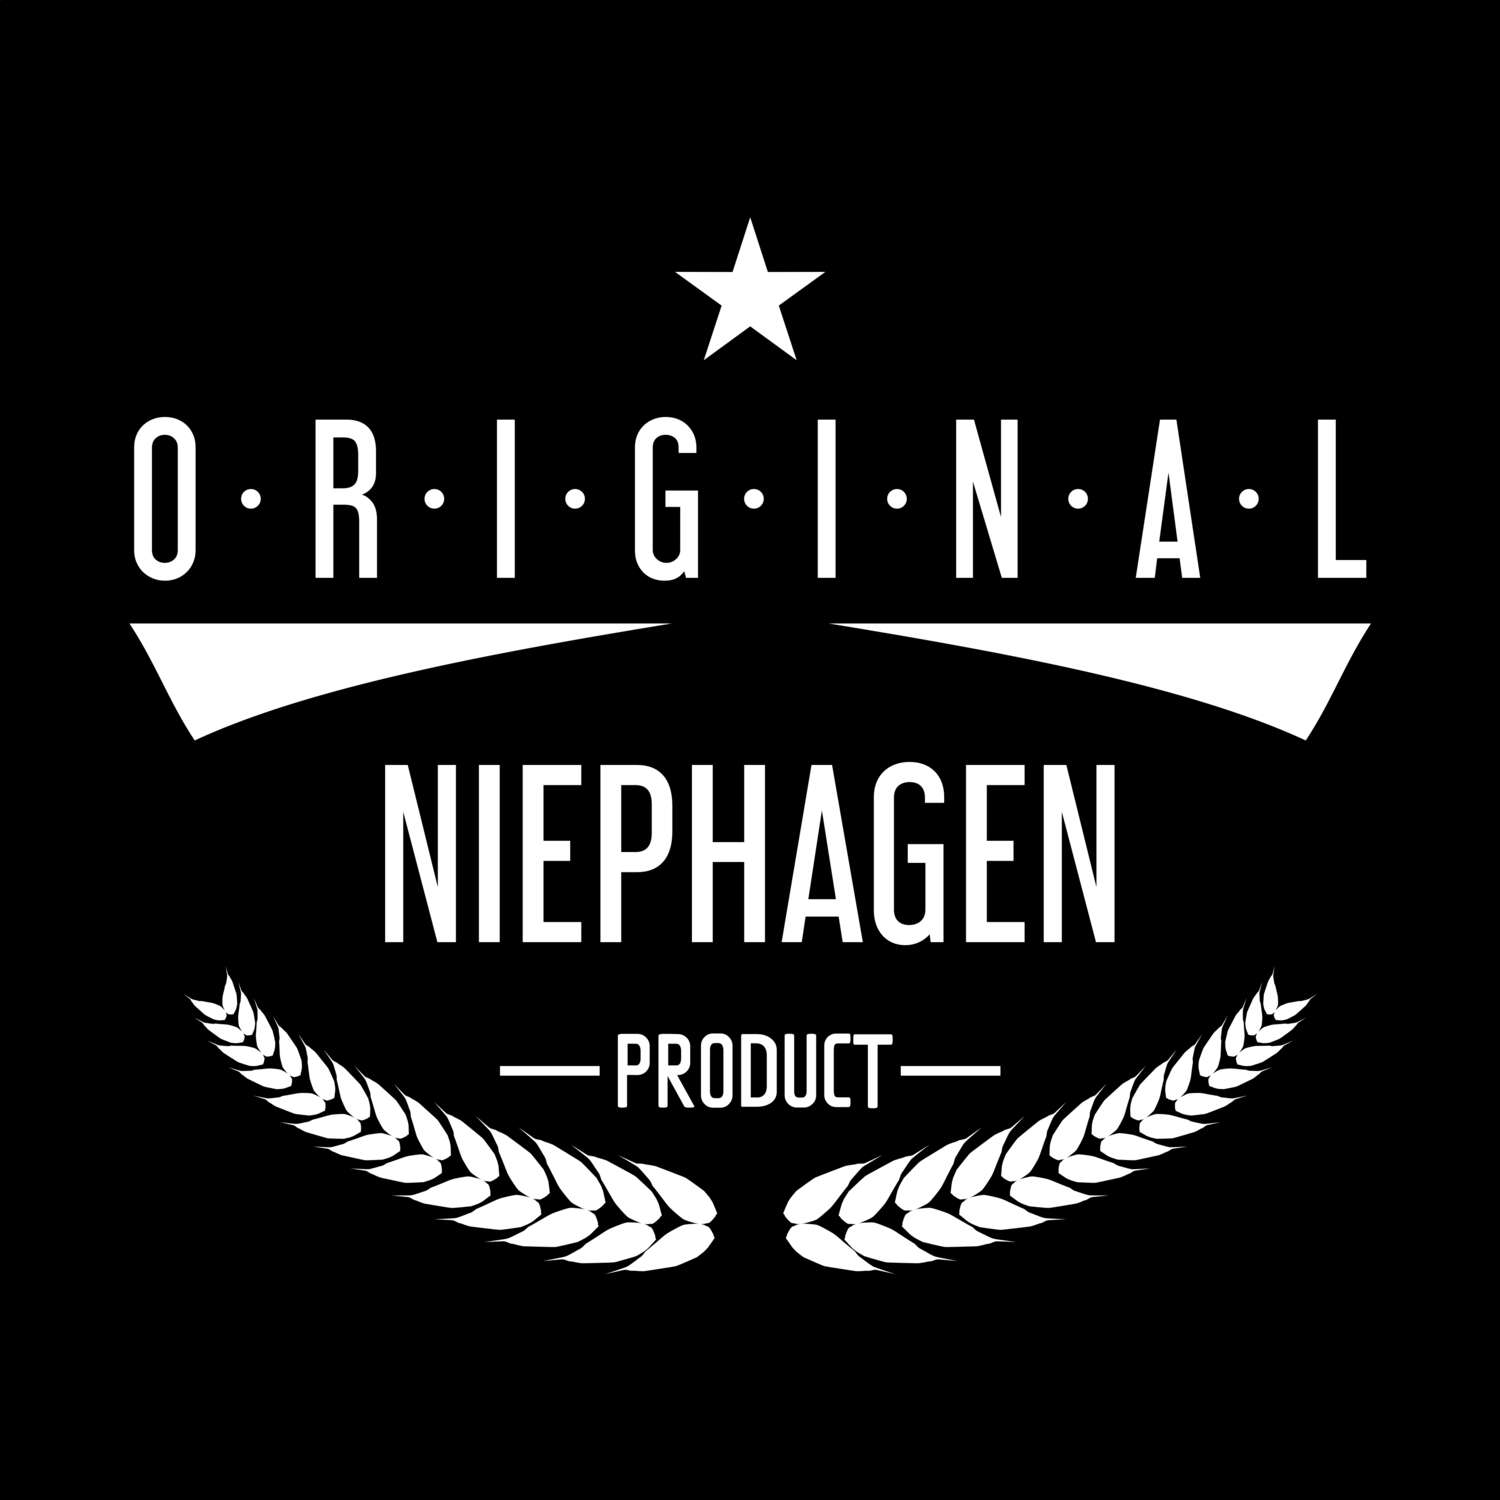 Niephagen T-Shirt »Original Product«